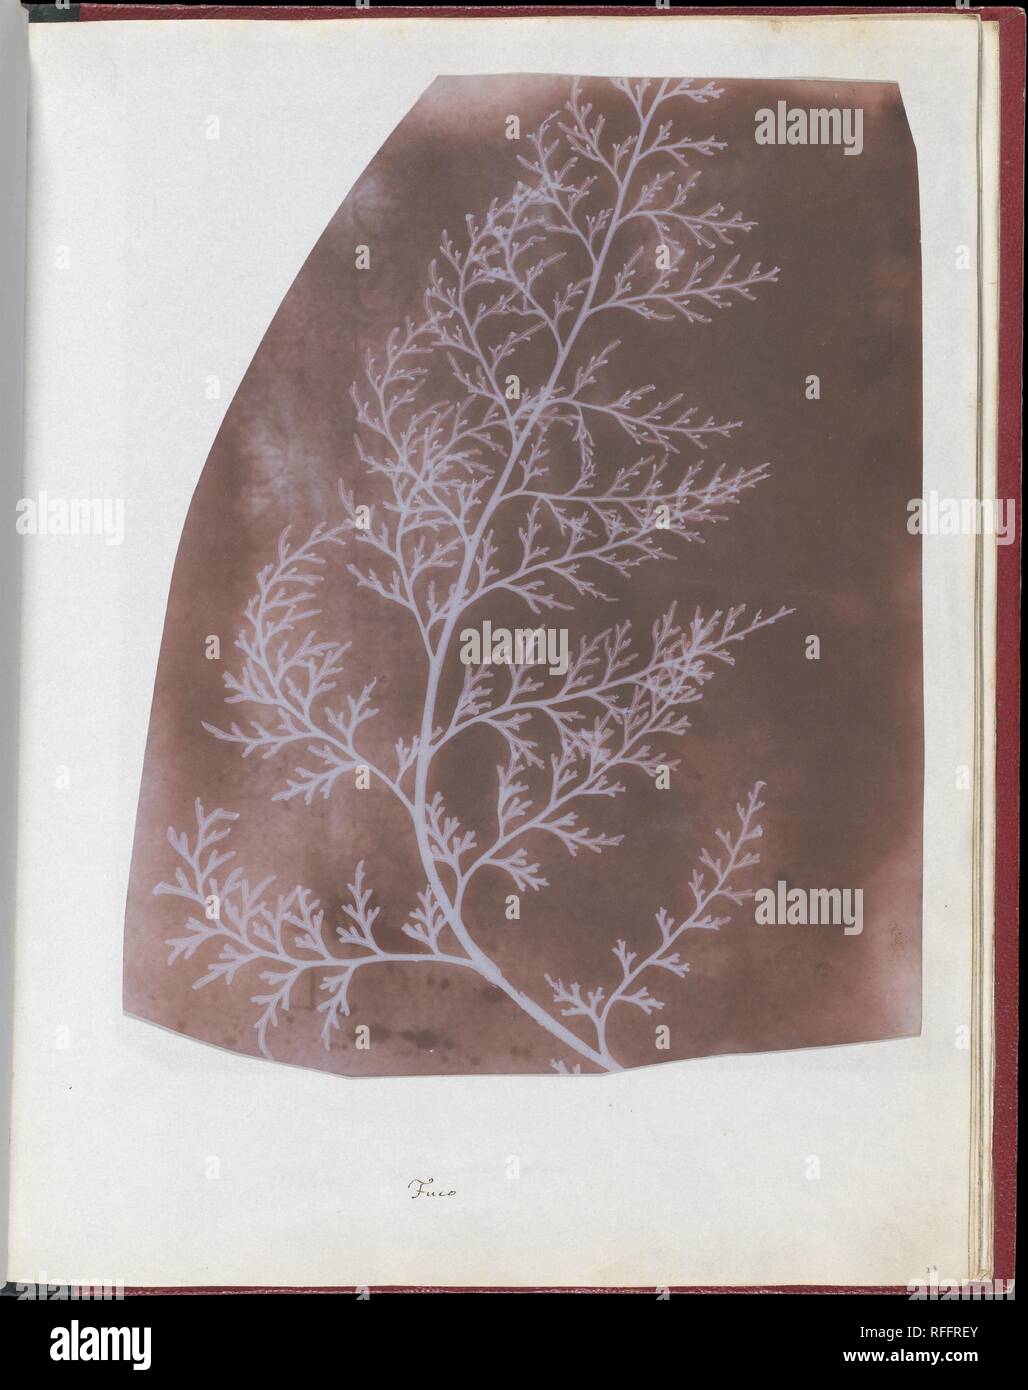 Rack. Artiste : William Henry Fox Talbot (1800-1877) Lacock, Dorset. Dimensions : 22 x 17,5 cm (8 11/16 x 6 7/8 in.), irrégulièrement découpée. Date : 1839. Cette trace évanescente d'un échantillon biologique, parmi les plus rares de photographies, a été faite par William Henry Fox Talbot, quelques mois après qu'il a présenté pour la première fois son invention, la photographie--ou "dessin photogénique", comme il l'appelait--pour le public. Talbot a première images ont été faites sans un appareil ; ici un morceau d'algue légèrement translucide a été posé directement sur une feuille de papier, photosensibilisée bloquant le rayons de soleil de la partie Banque D'Images